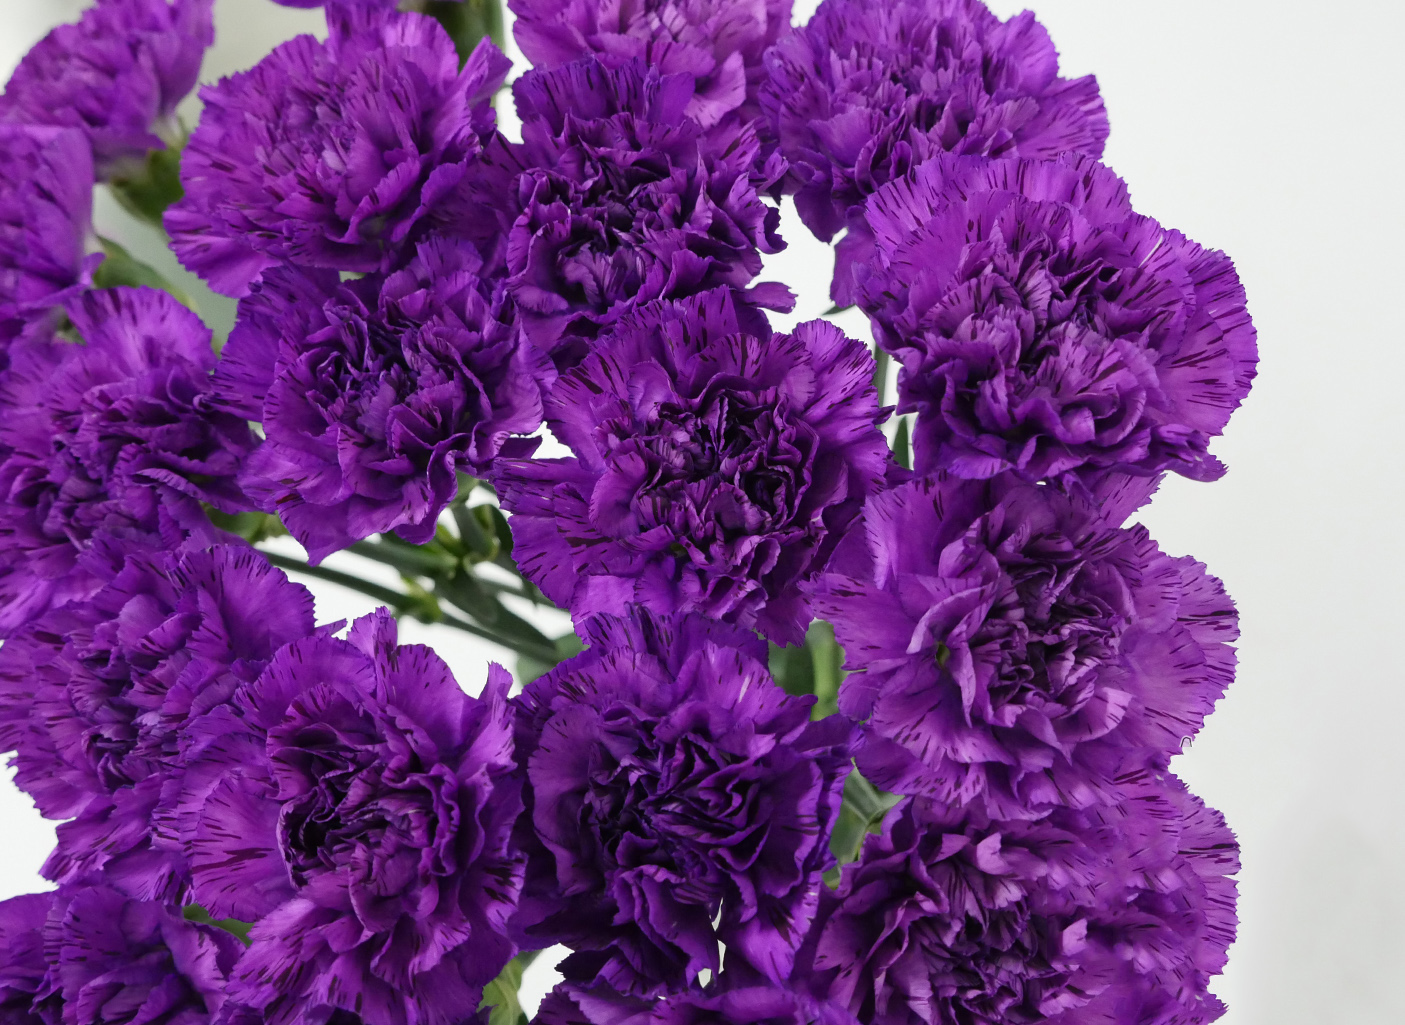 Tổng hợp hình ảnh hoa cẩm chướng tím đẹp nhất - [Kích thước hình ảnh: 1405x1025 px]